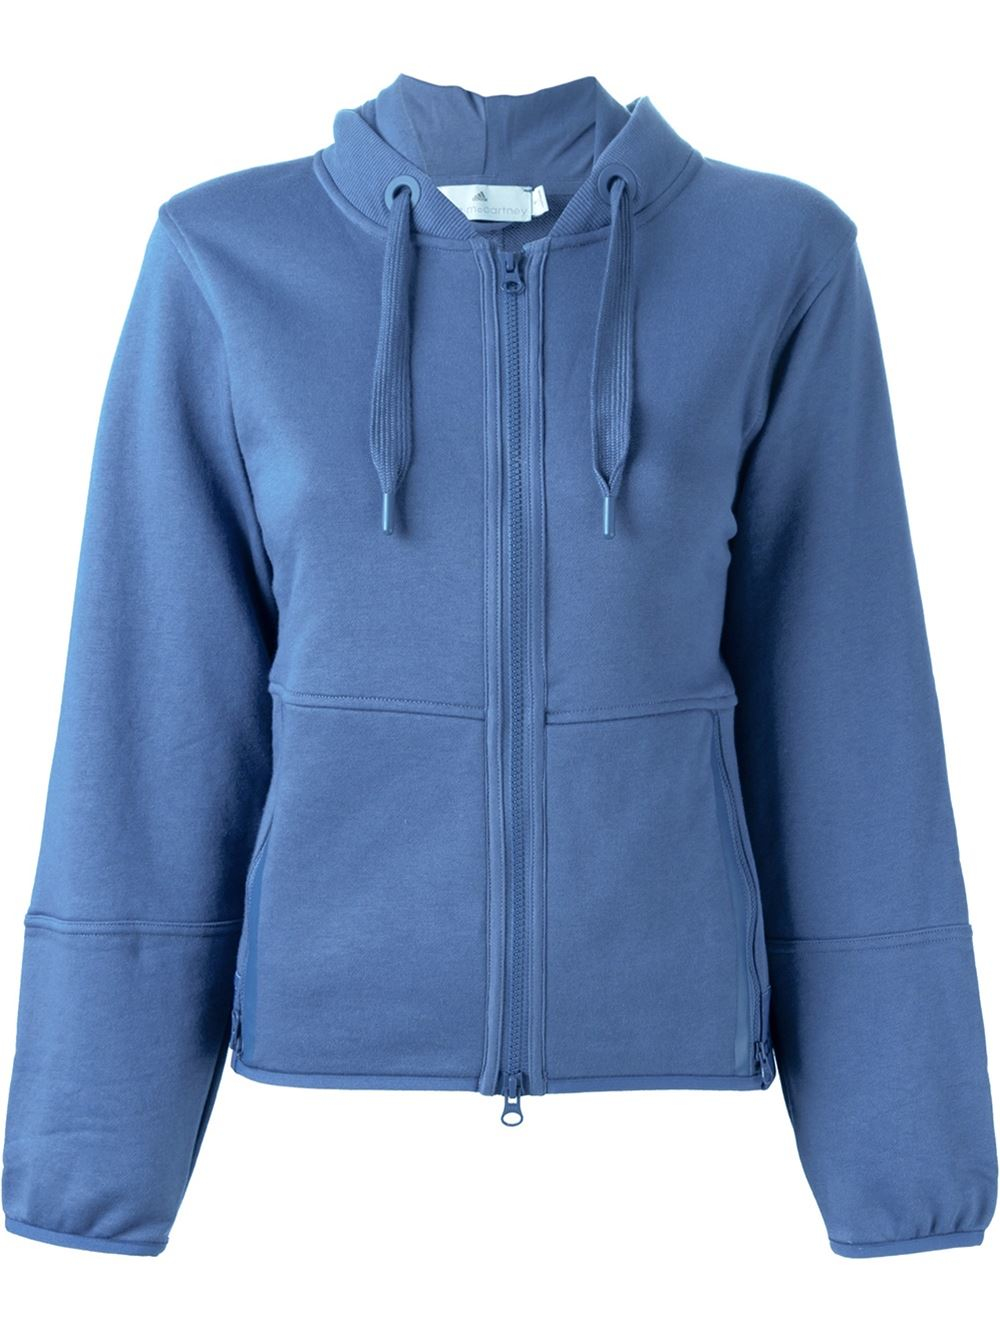 Adidas by stella mccartney 'essential' Hoodie in Blue | Lyst